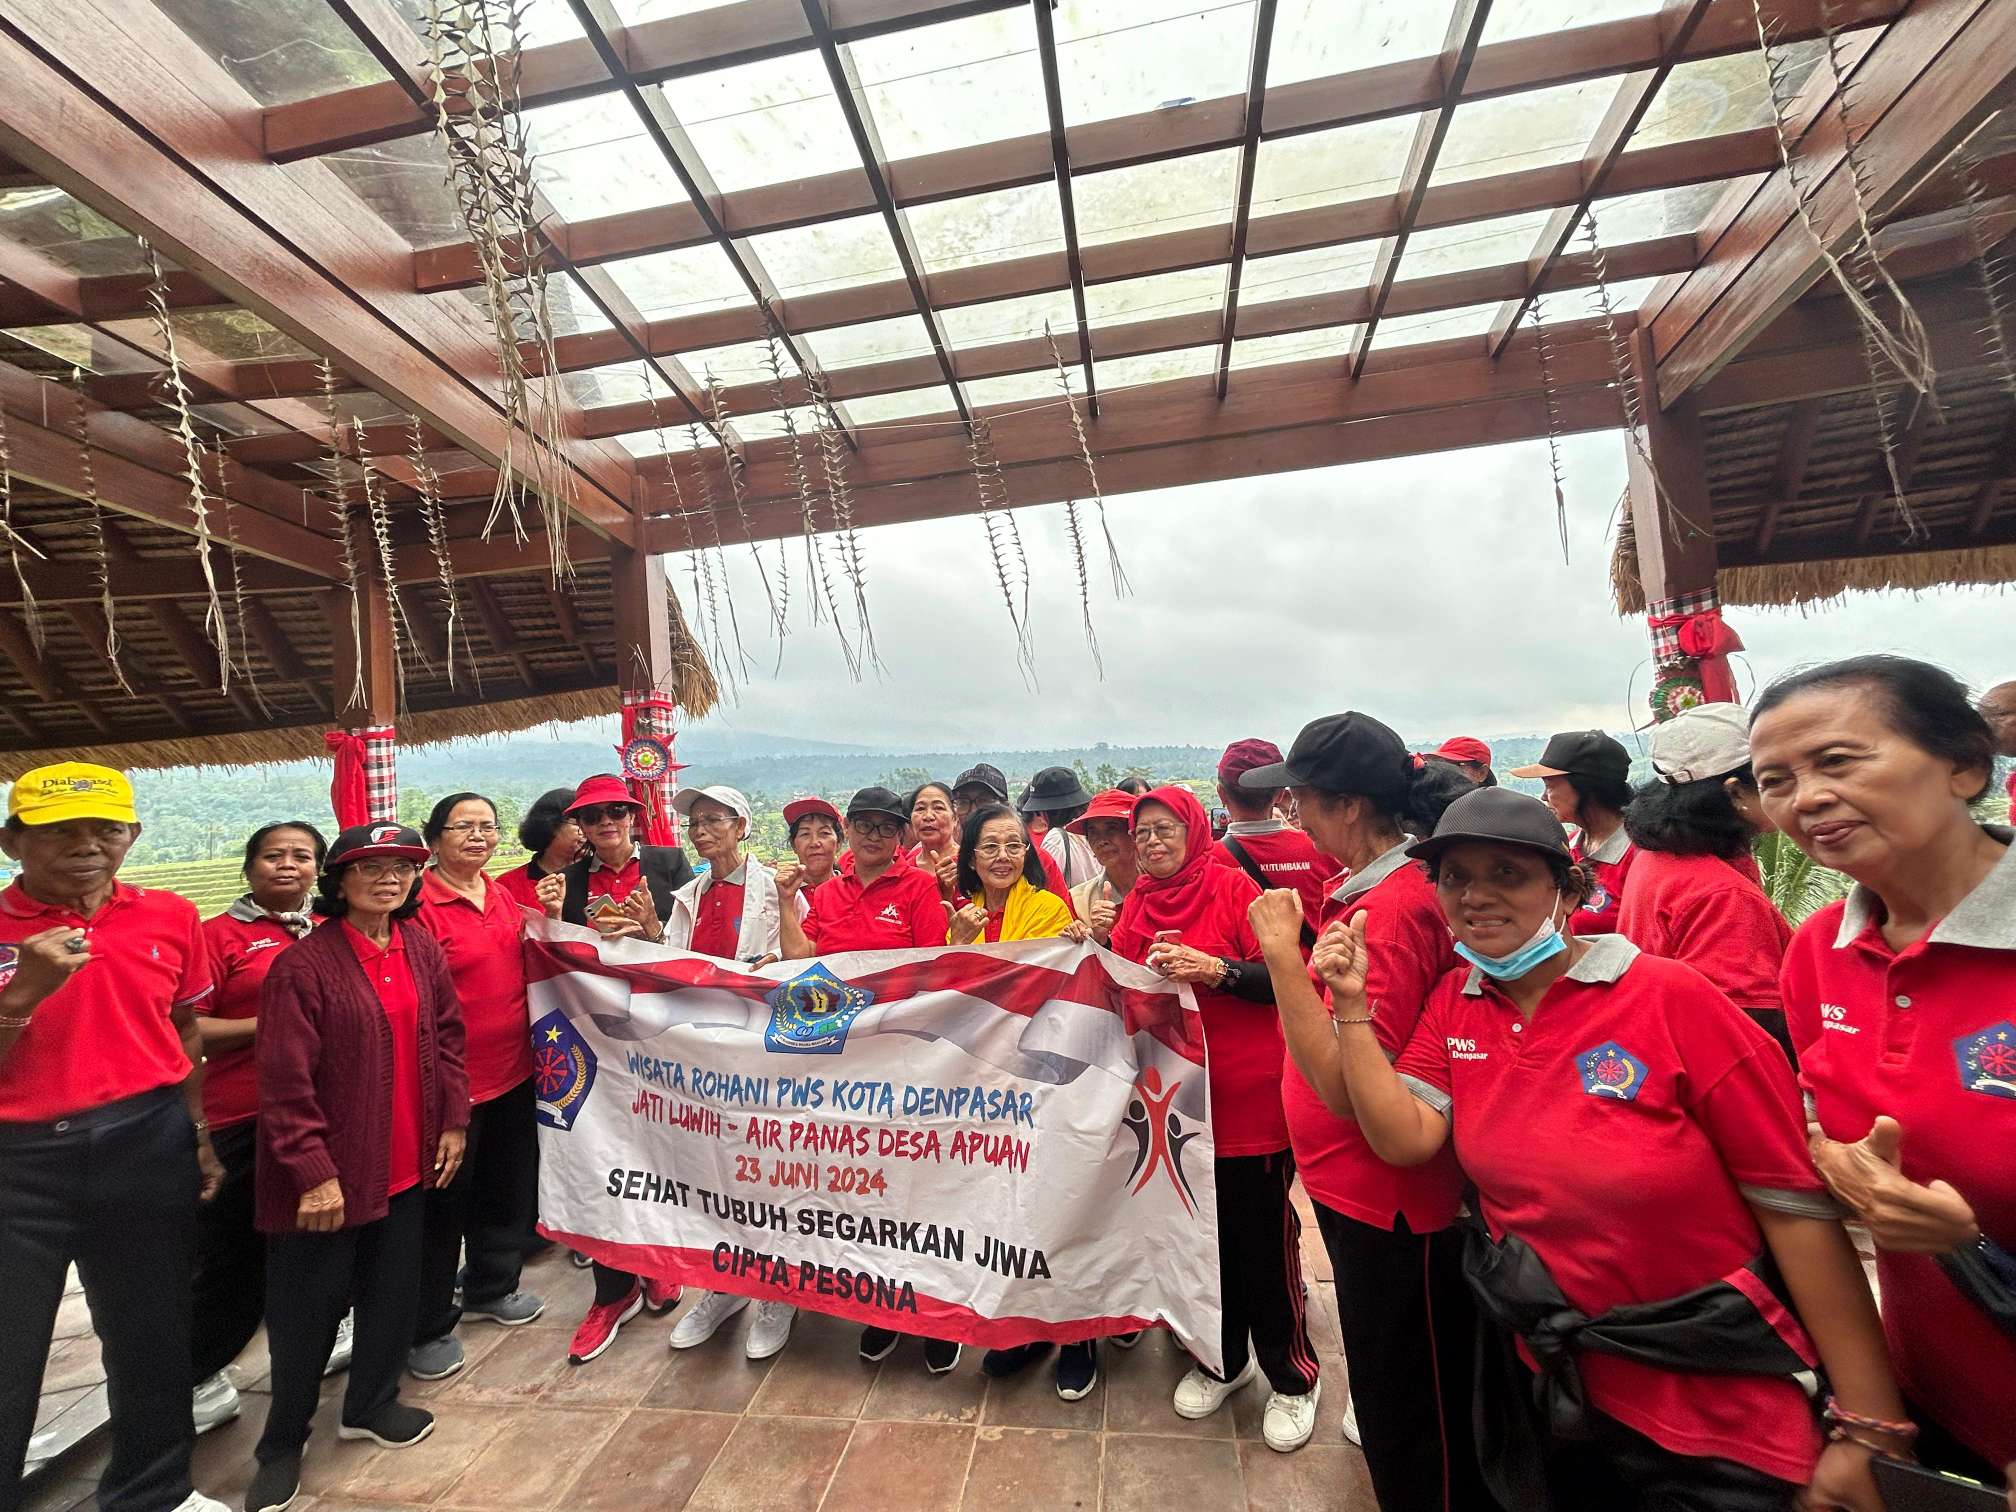 Promosikan Gaya Hidup Sehat Pererat Kebersamaan, Ini yang Dilakukan PWS Denpasar di Jatiluwih